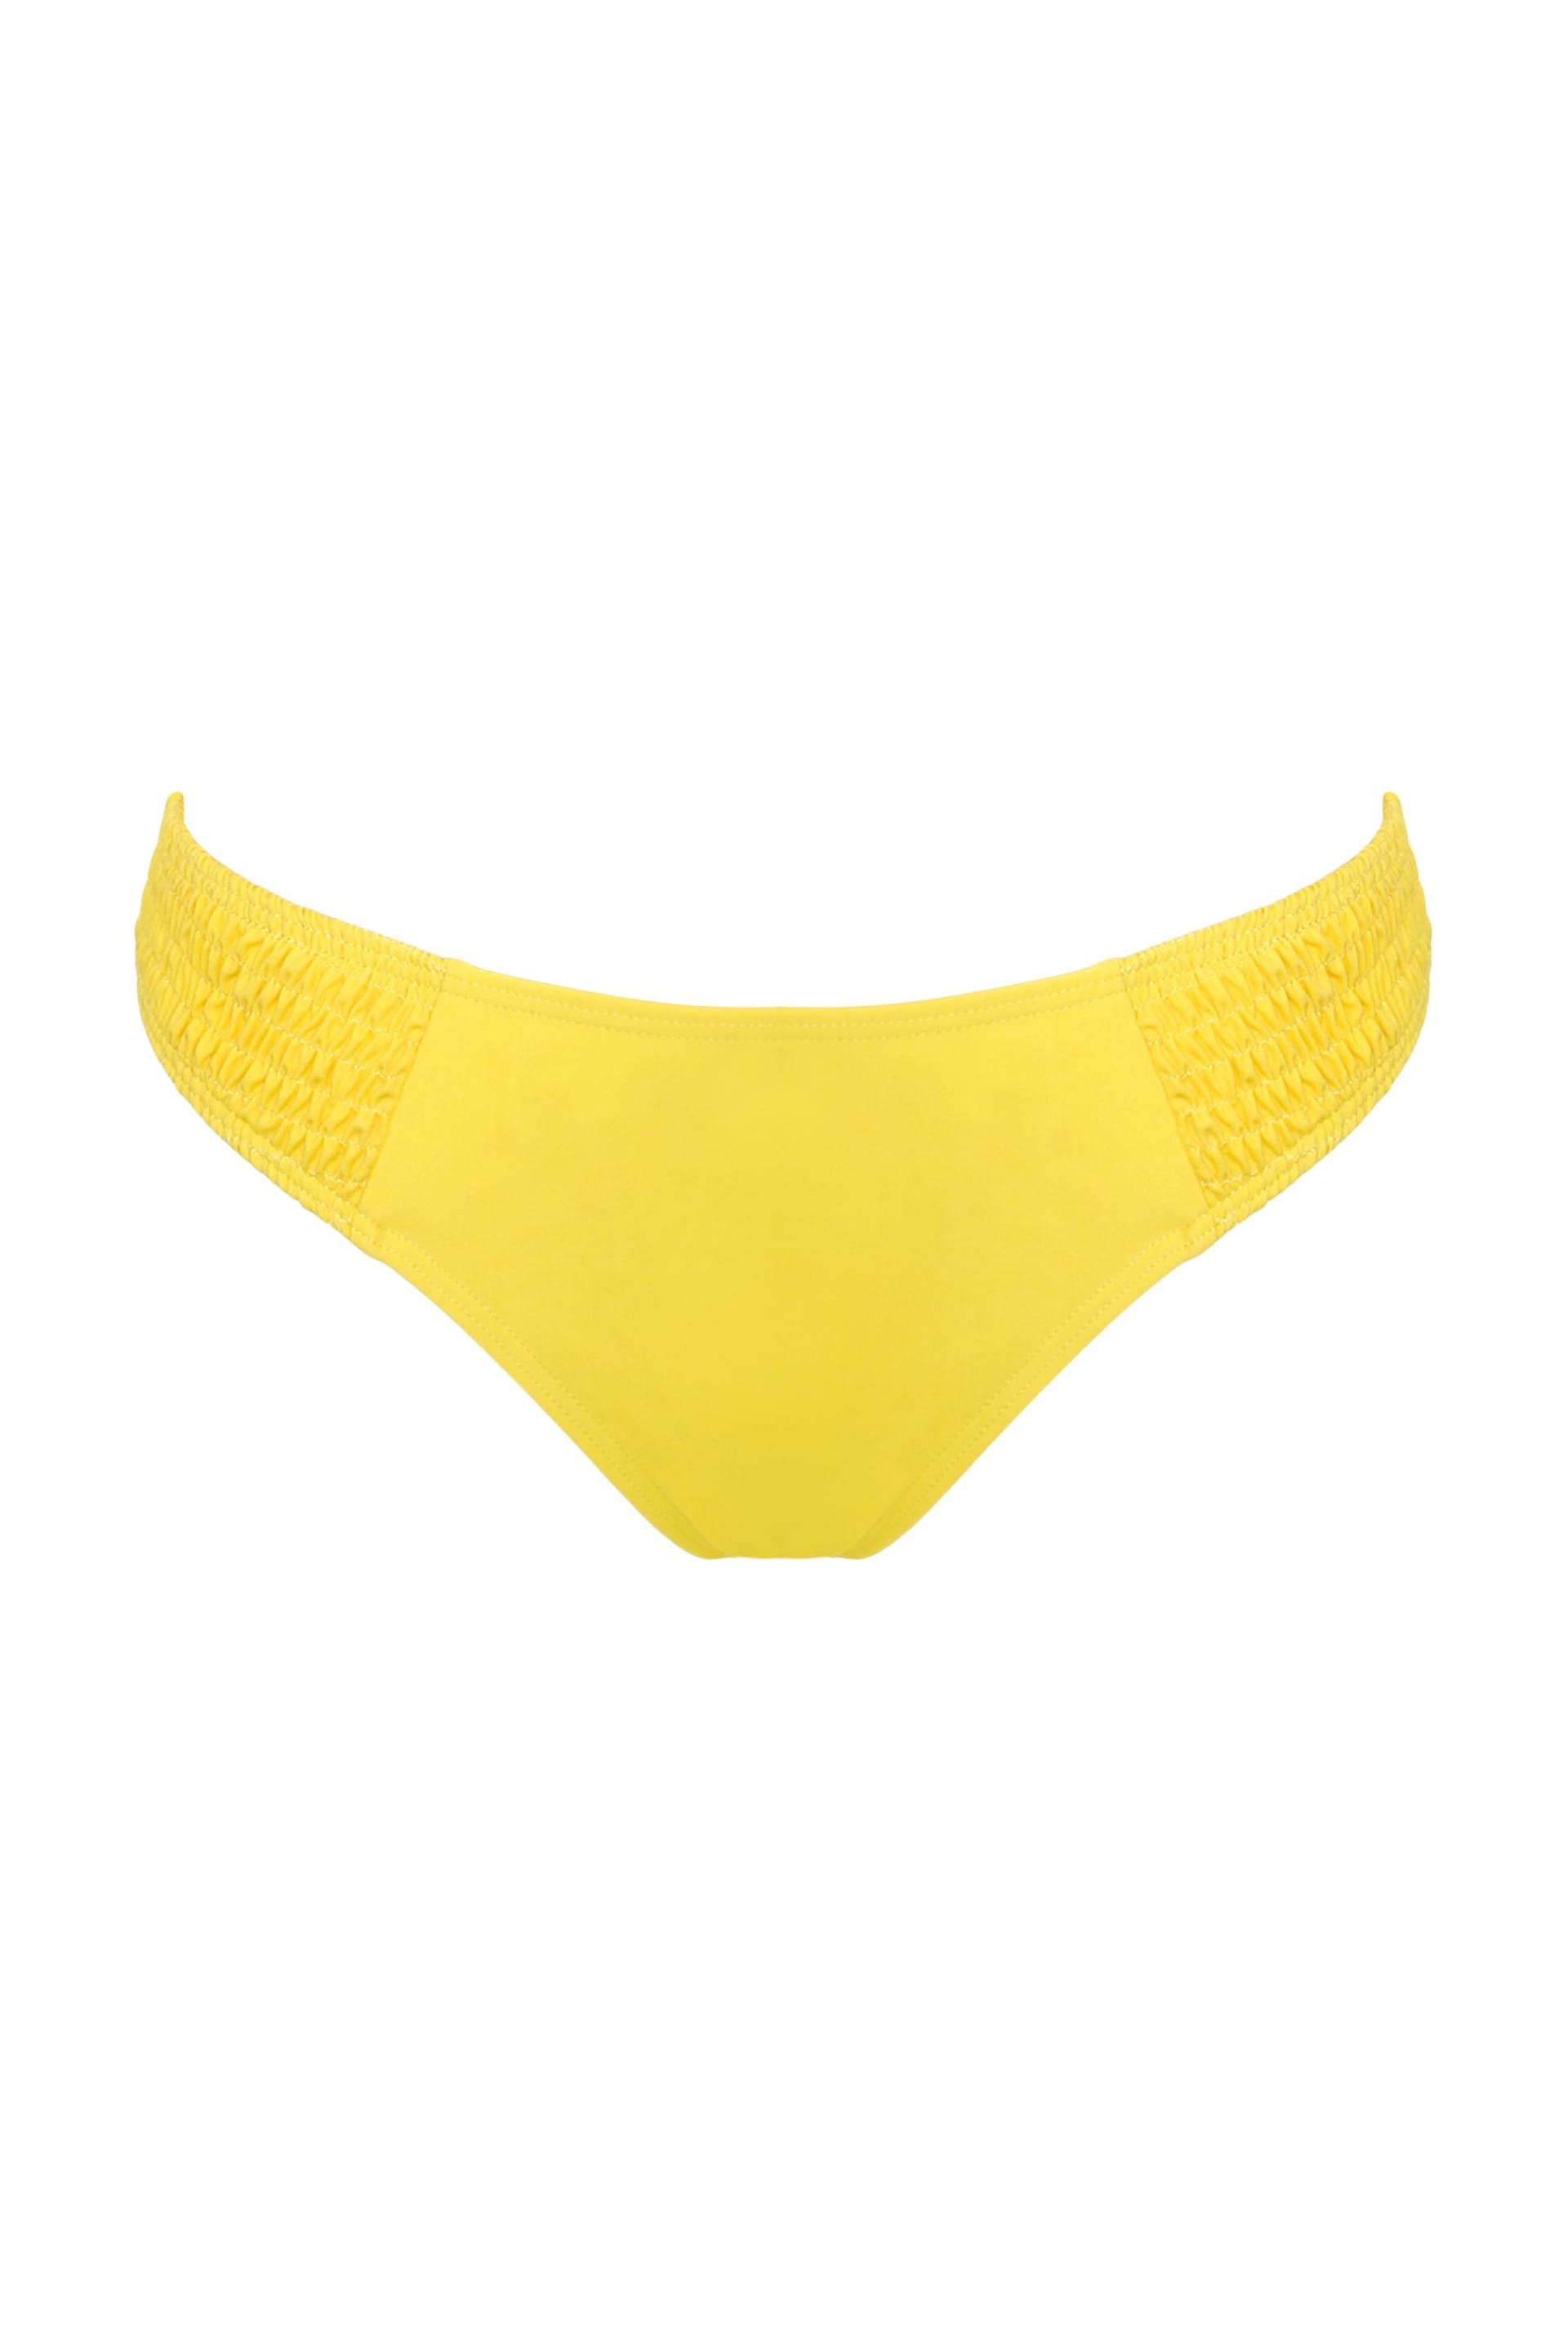 Pour Moi Yellow Coast Bikini Brief - Image 4 of 5